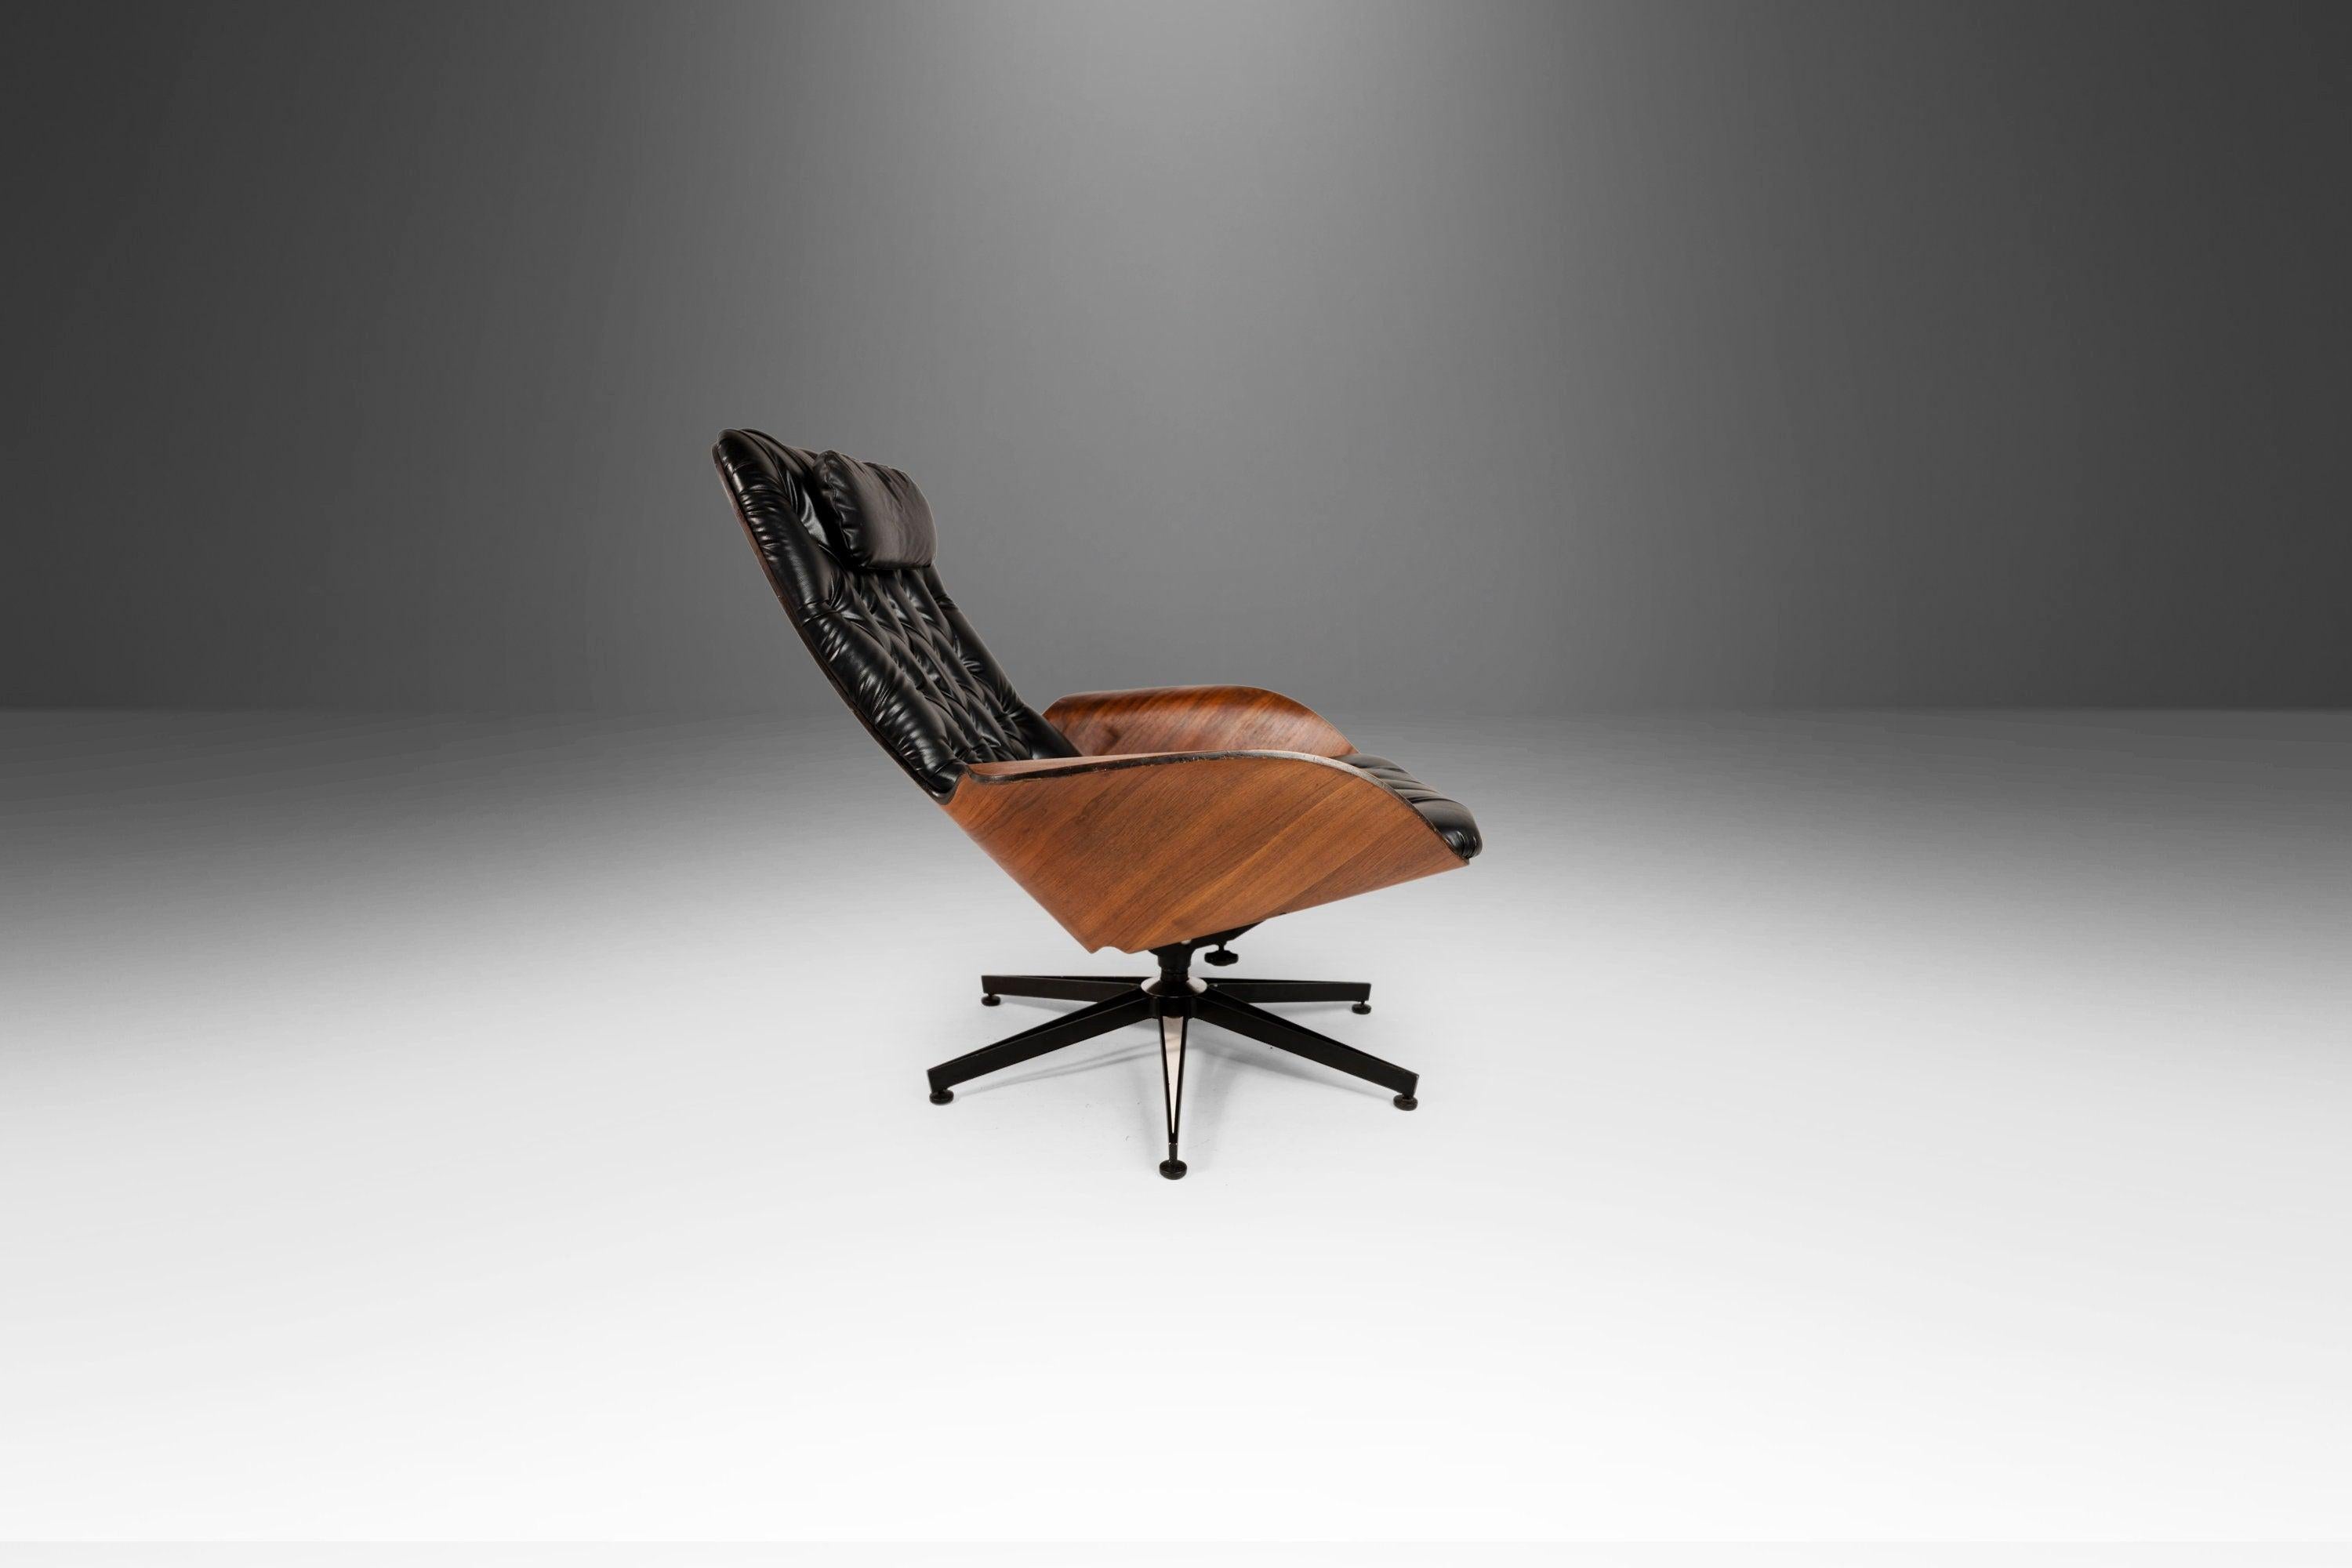 Der ikonische Mr. Chair, entworfen von dem gefeierten George Mulhauser, ist gleichermaßen bequem und stilvoll und der Inbegriff funktionaler Kunst. Die Schale aus kühn geformtem, gebogenem Walnuss-Sperrholz ist ikonisch und zeitlos geworden. Der